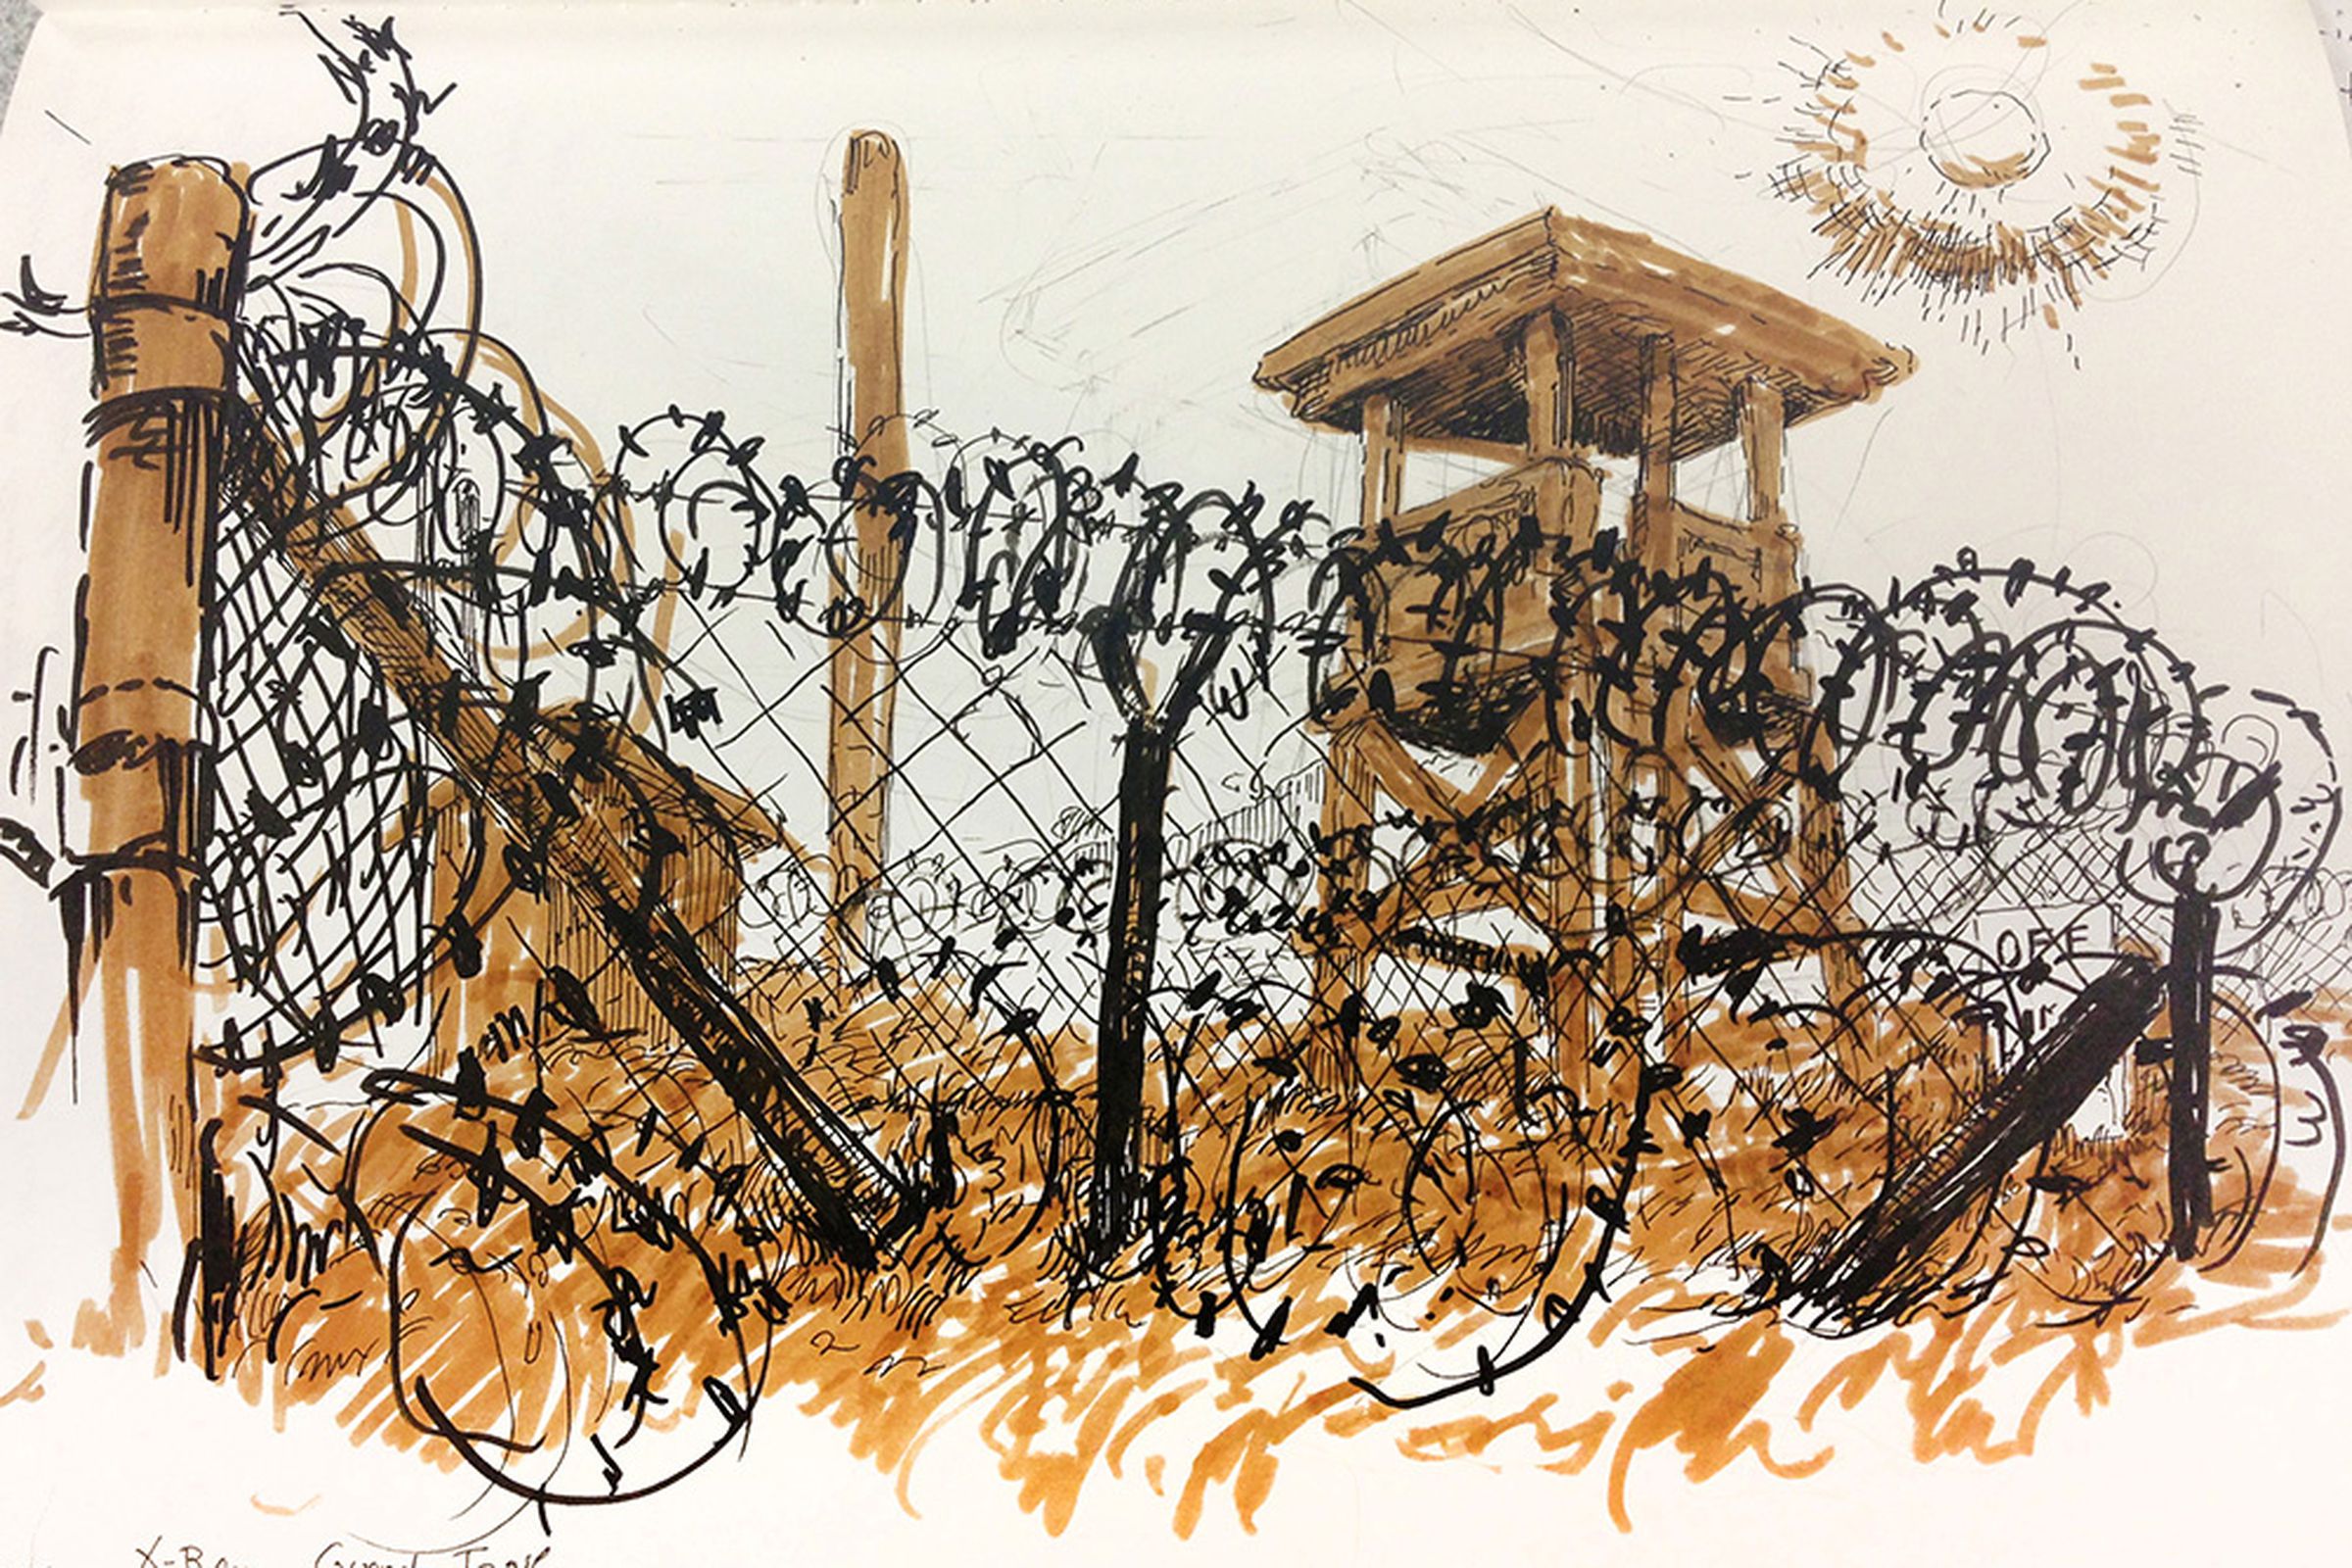 Guantanamo Bay drawn by Molly Crabapple for Vice